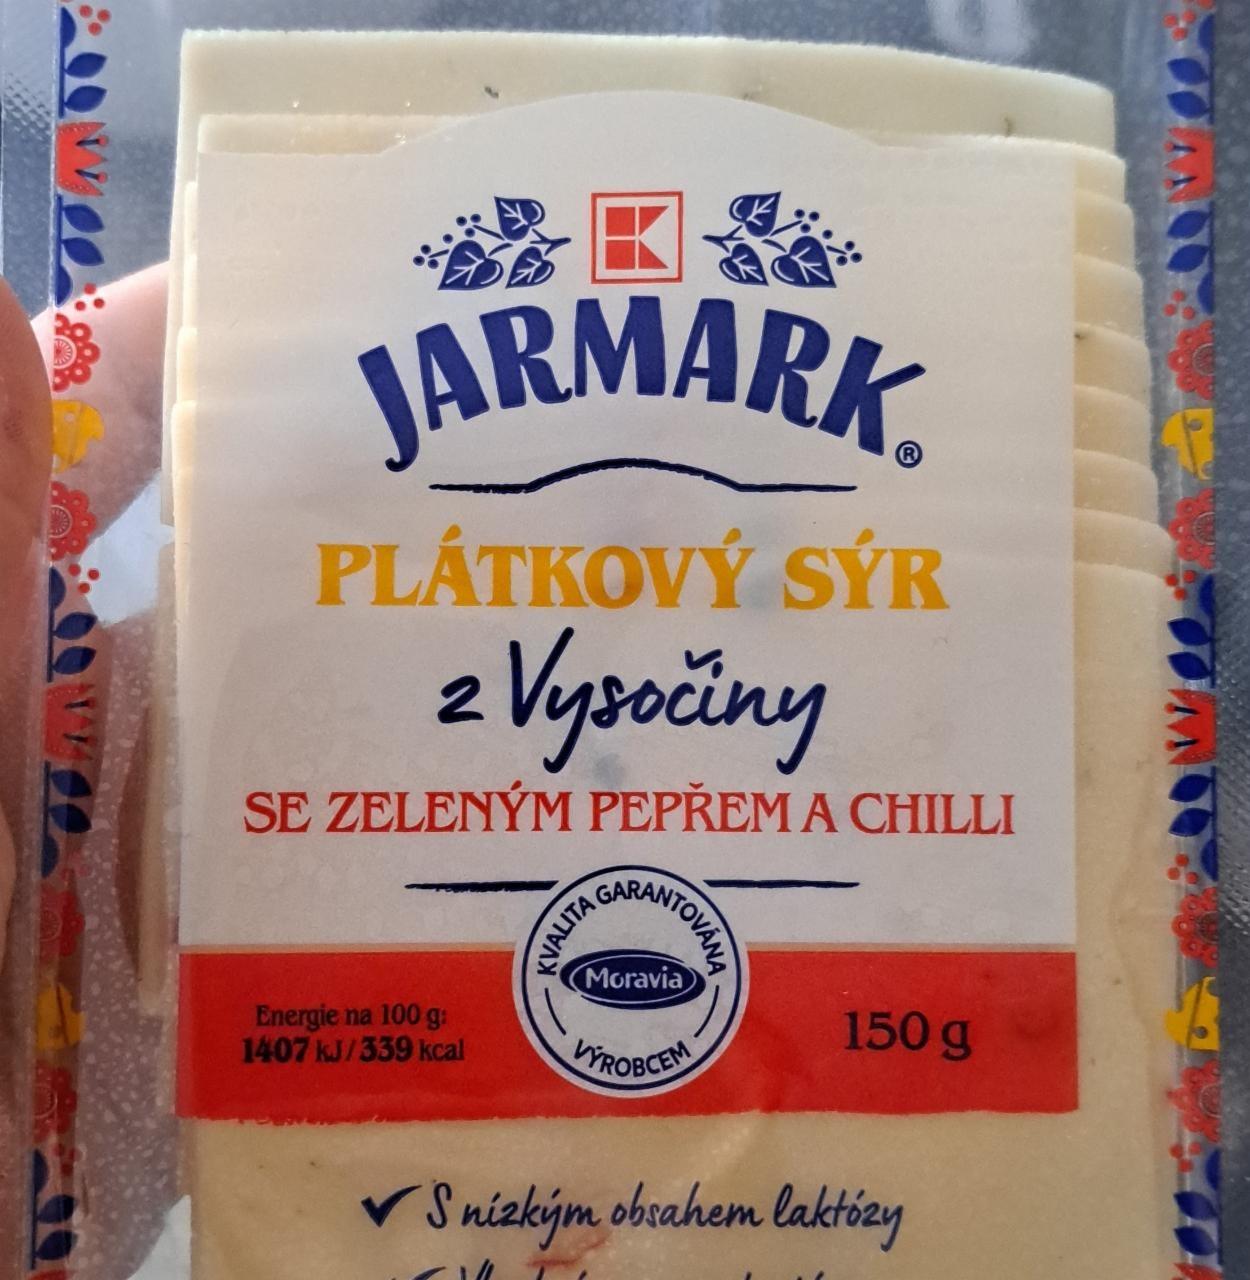 Фото - Jarmark plátkový sýr se zeleným pepřem a chilli K-Jarmark